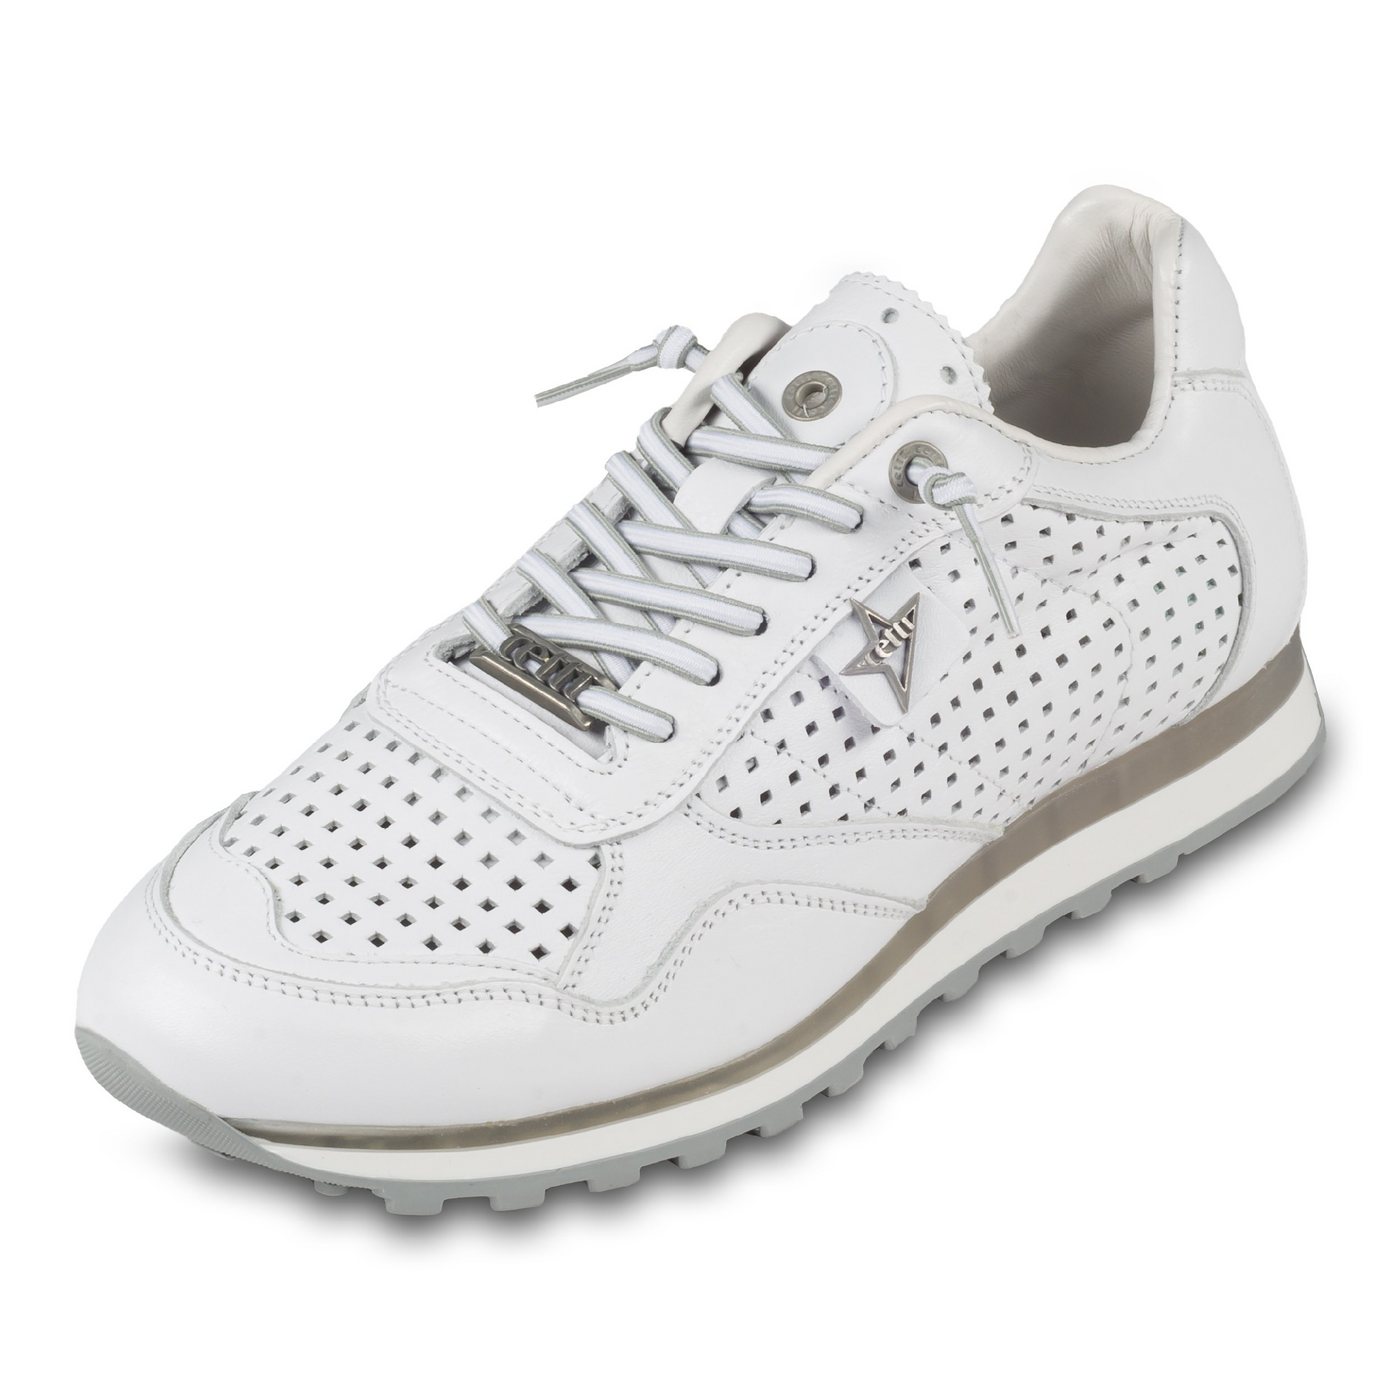 Cetti Herren Sneaker weiß, Kalbsleder perforiert (C-848 nature blanco) Sneaker Gefertigt in Spanien von Cetti